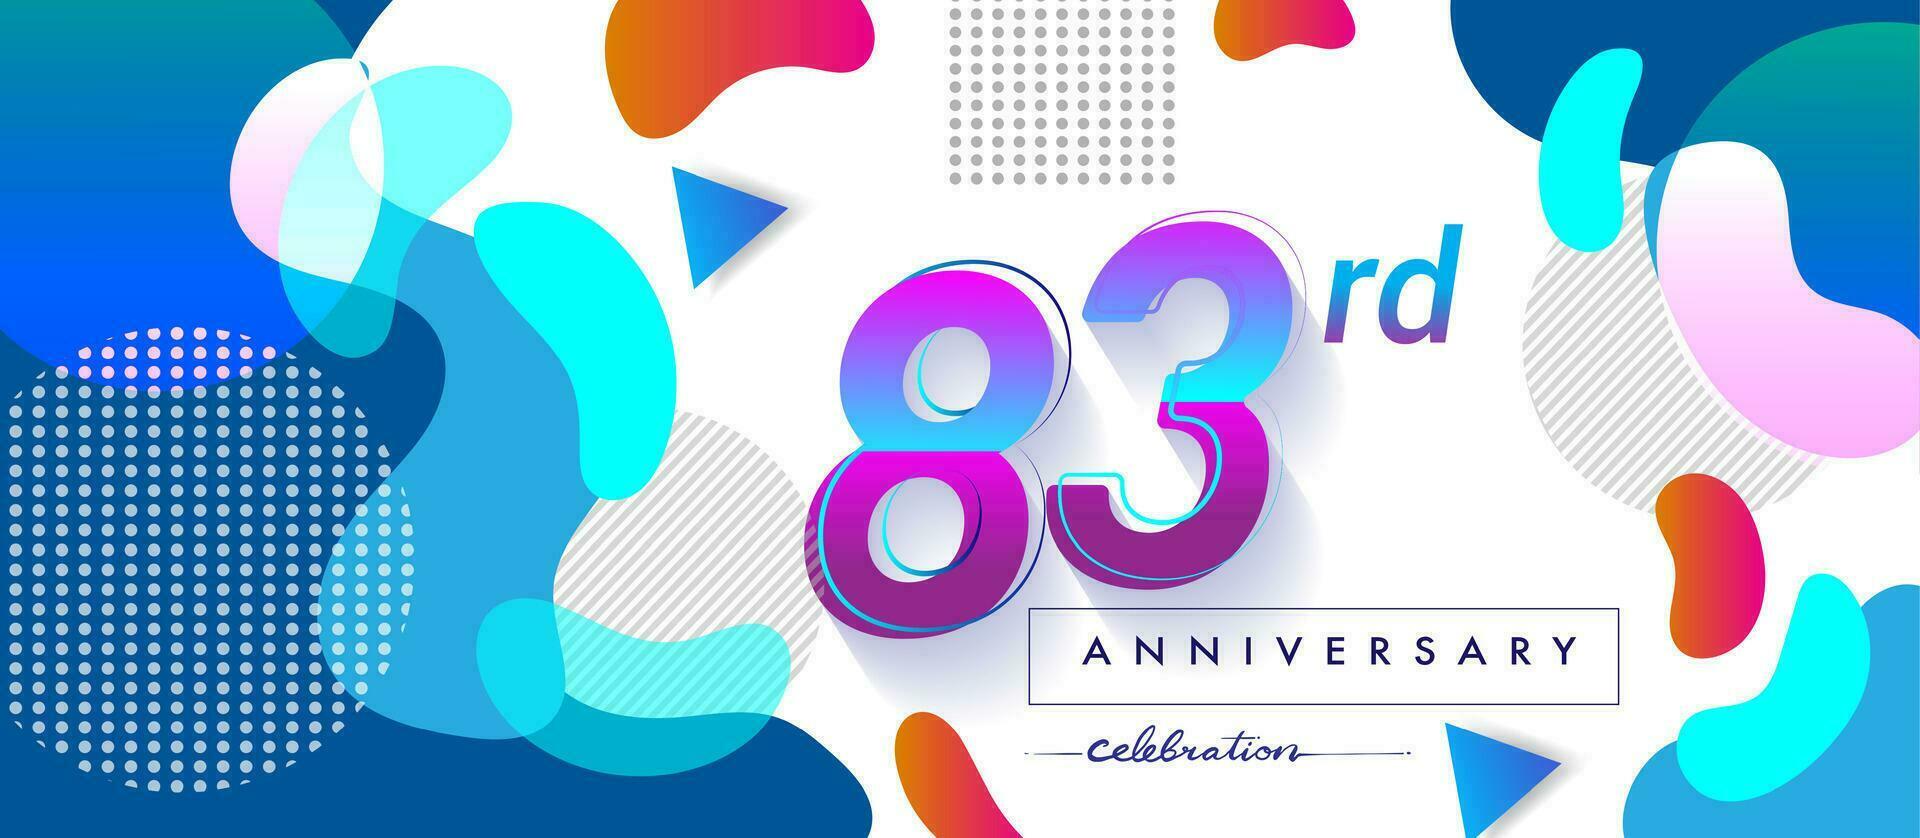 83: e år årsdag logotyp, vektor design födelsedag firande med färgrik geometrisk bakgrund och cirklar form.